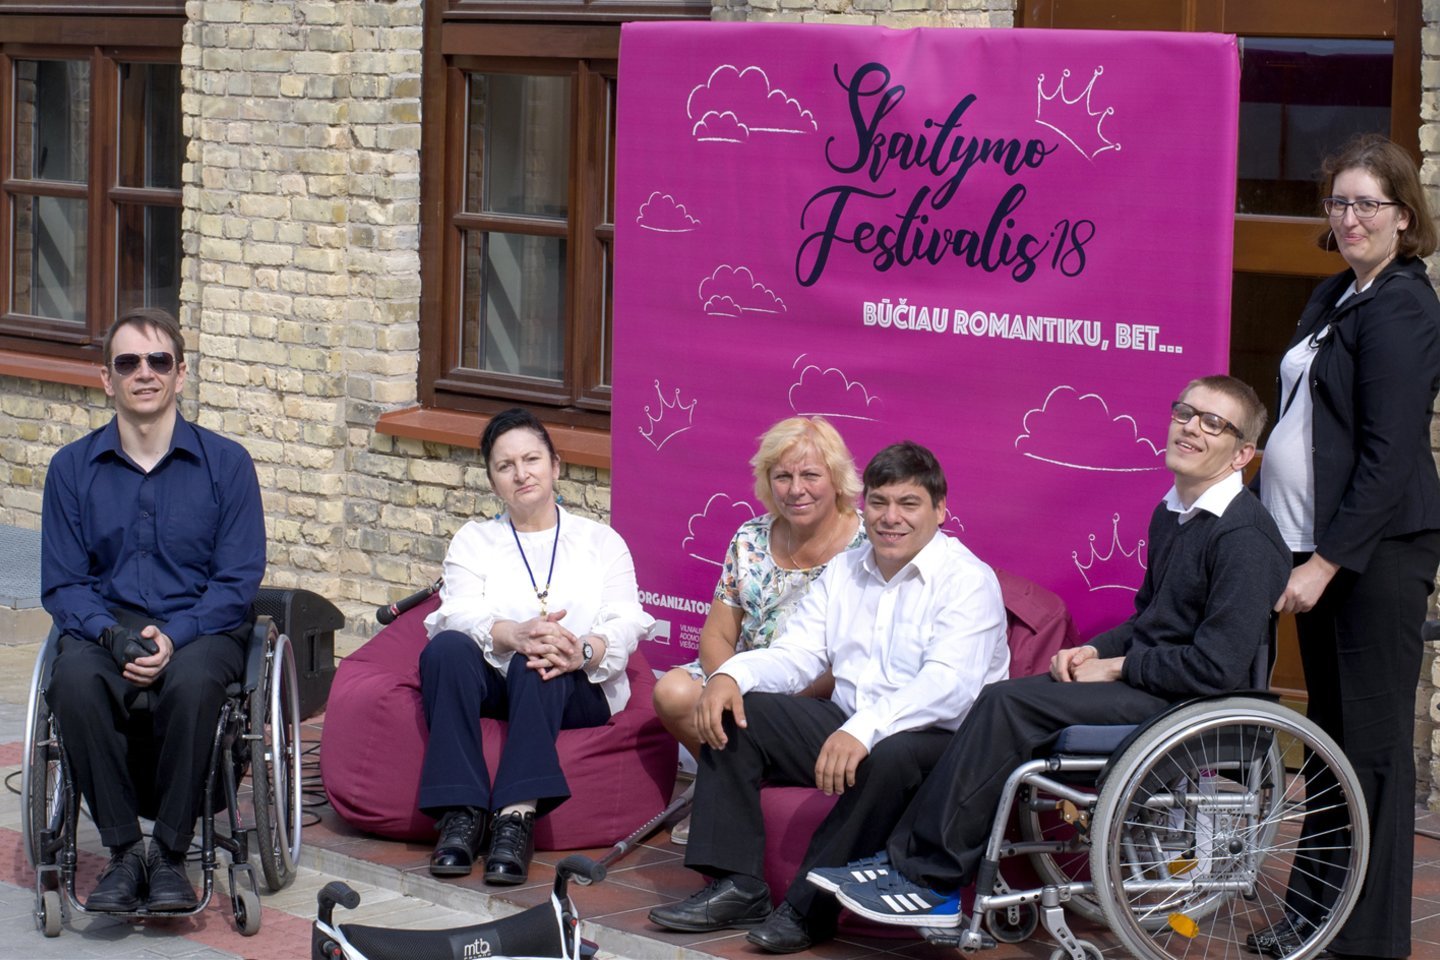  Vilniaus neįgaliųjų dienos centro teatro grupė „Skaitymo festivalyje“ dalyvavo antrą kartą.<br> Nijolės Zenkevičiūtės nuotr.